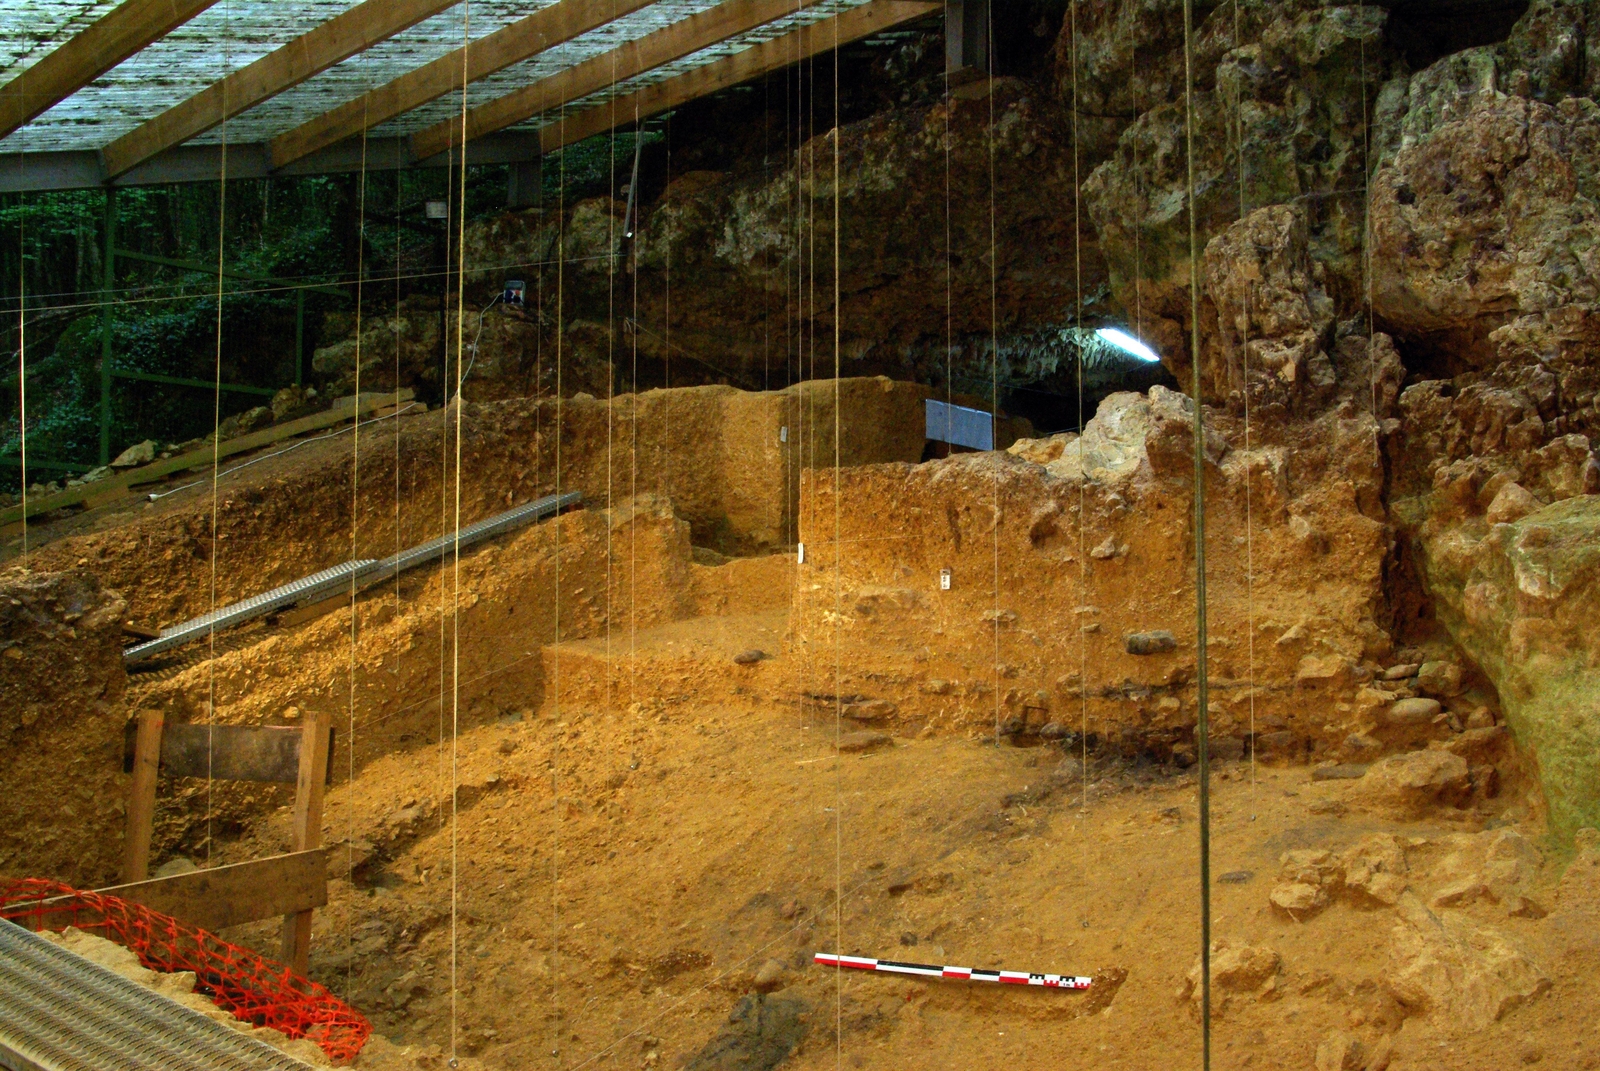 La grotte du Taillis des coteaux conserve un eexceptionnelle séquence chrono-culturelle du Paléolithique supérieur développée au sein d'une stratigraphie d'environ 5 mètres d'épaisseur. Les niveaux actuellement découverts concernent l'Aurignacien, le Gravettien, le Badegoulien, le Magdalénien inférieur et le Magdalénien moyen. Des indices de Solutréen ont aussi été découverts. Abris sculptés de la Préhistoire.